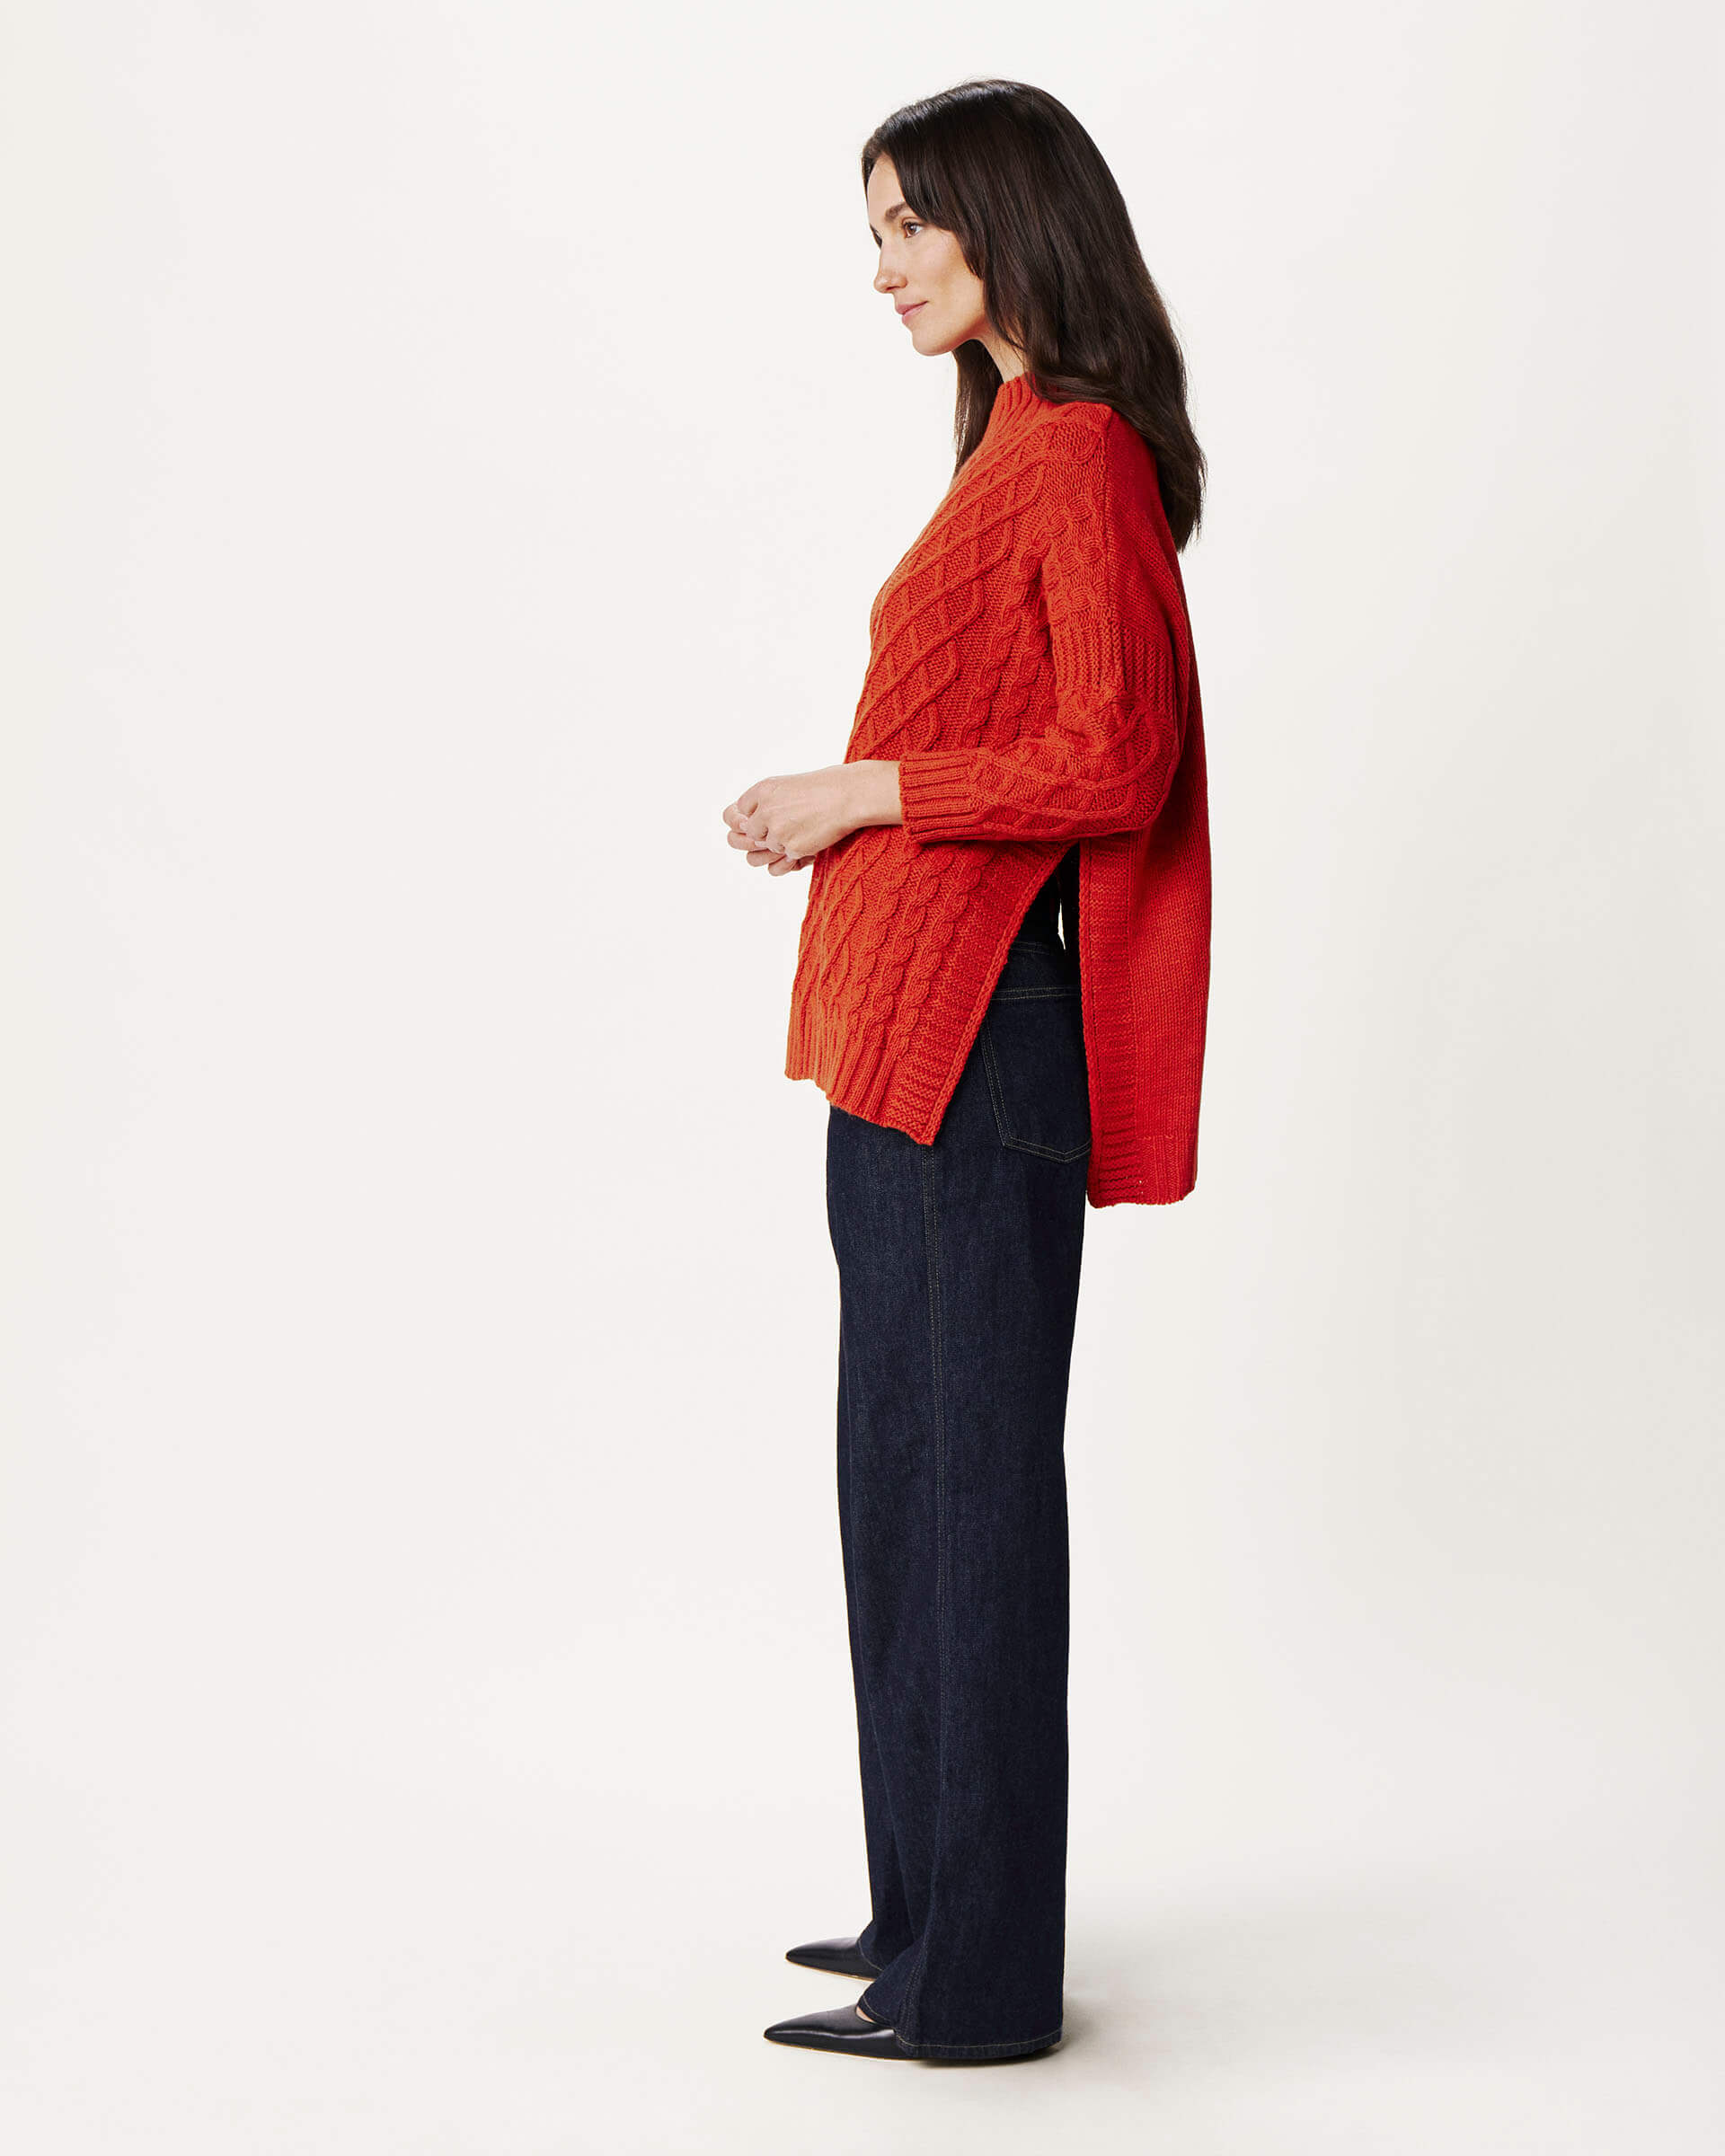 profile of woman wearing Mersea lisbon red sweater